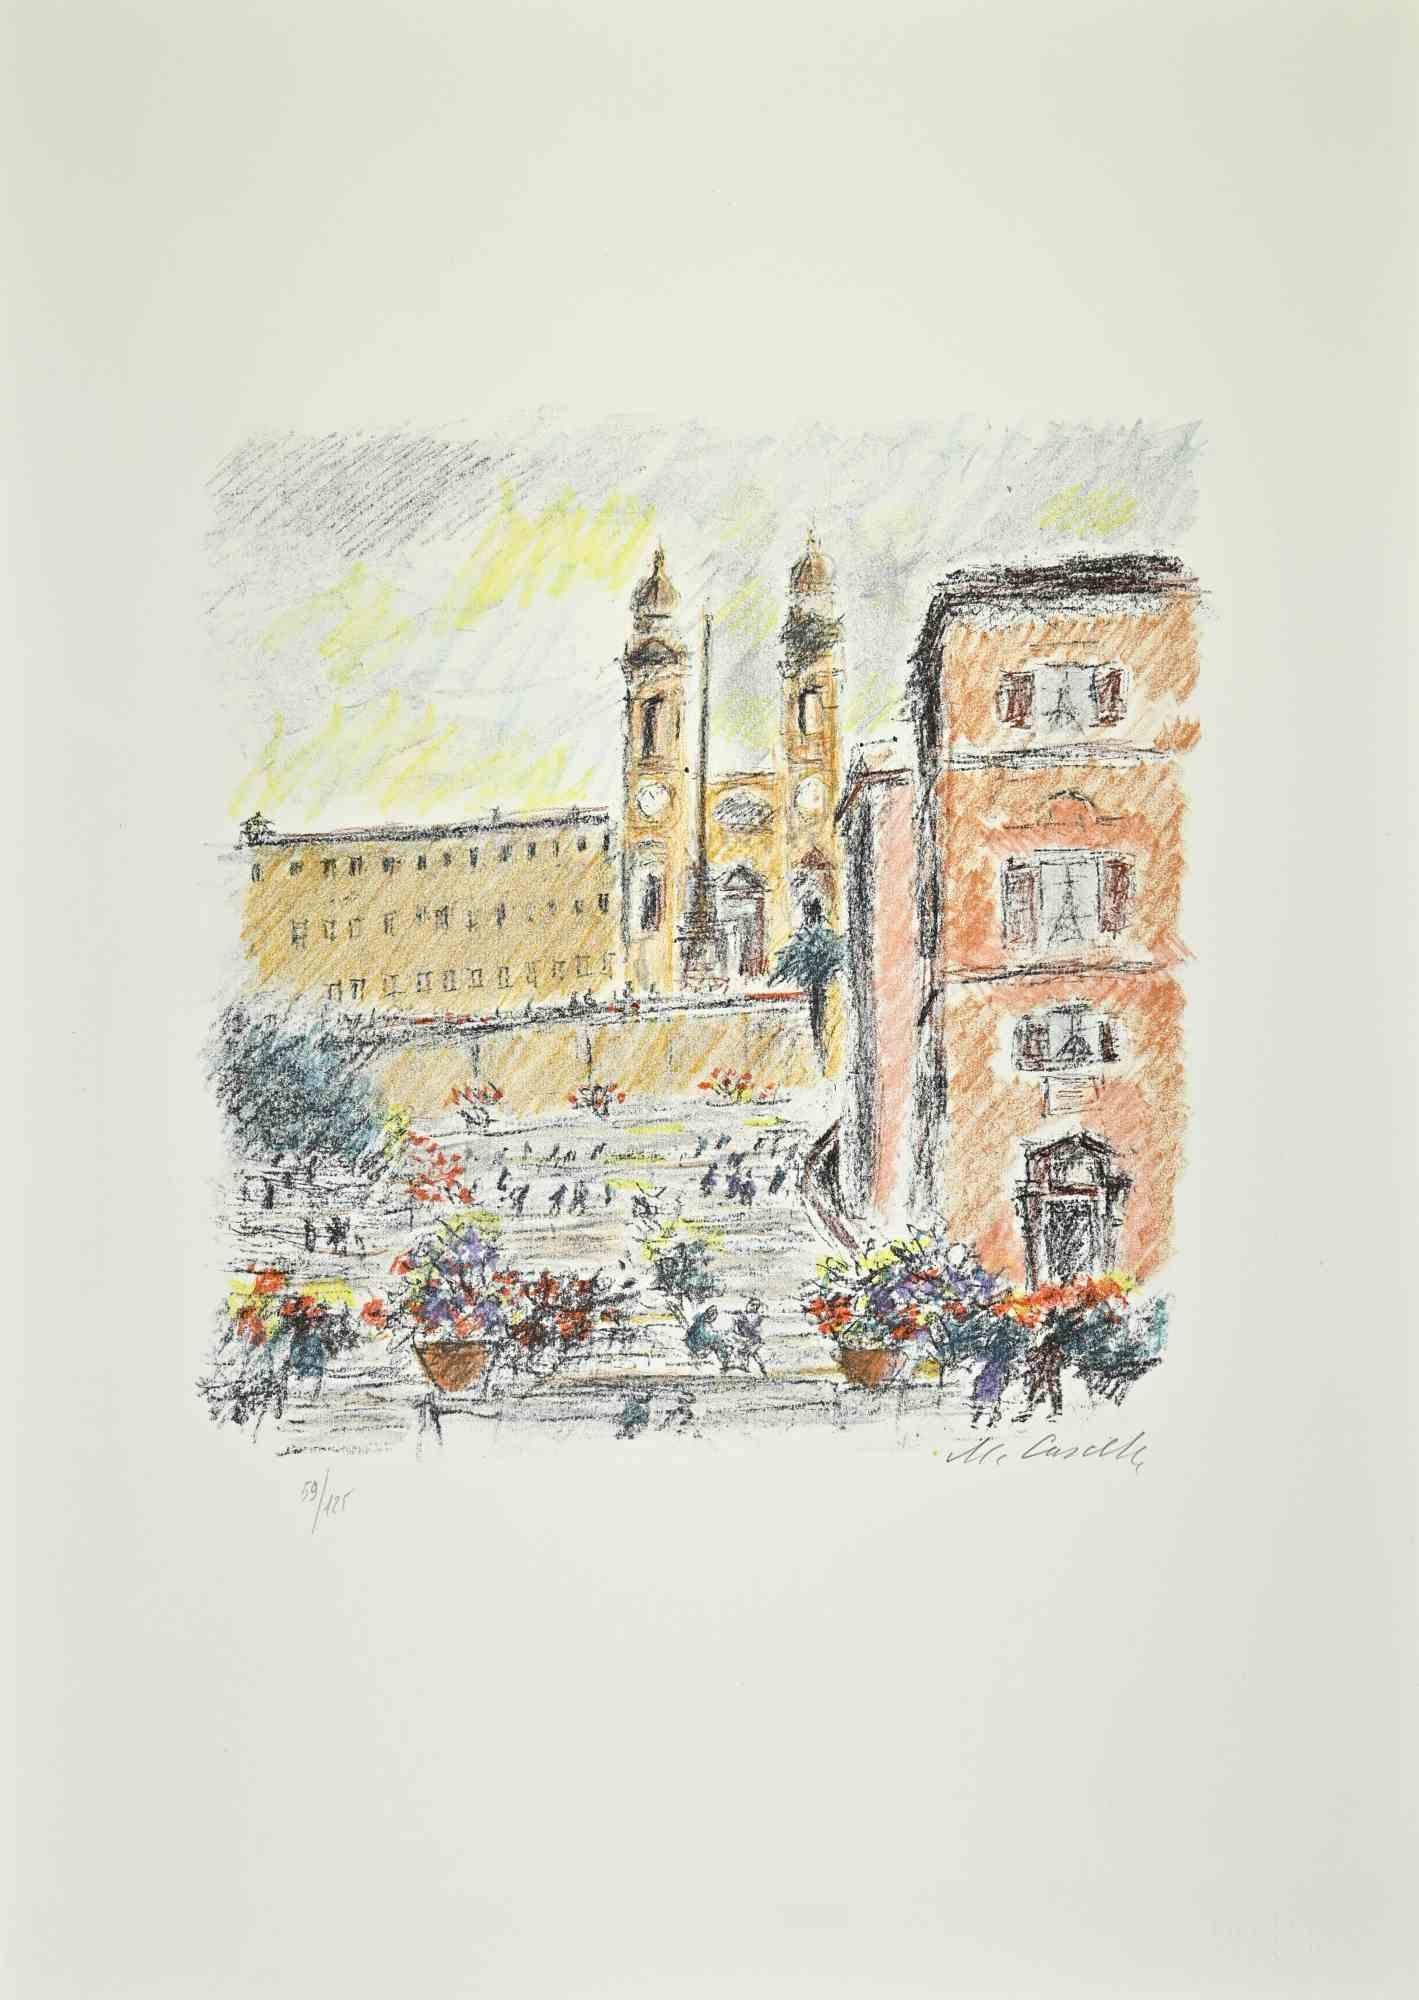 Piazza di Spagna ist ein Kunstwerk des italienischen Künstlers Michele Cascella aus dem Jahr 1979.

Kolorierte Lithographie auf Papier der Mappe "Landschaft", 1979, mit sechs Originallithographien und den Gedichten von Franco Simongini mit dem Titel